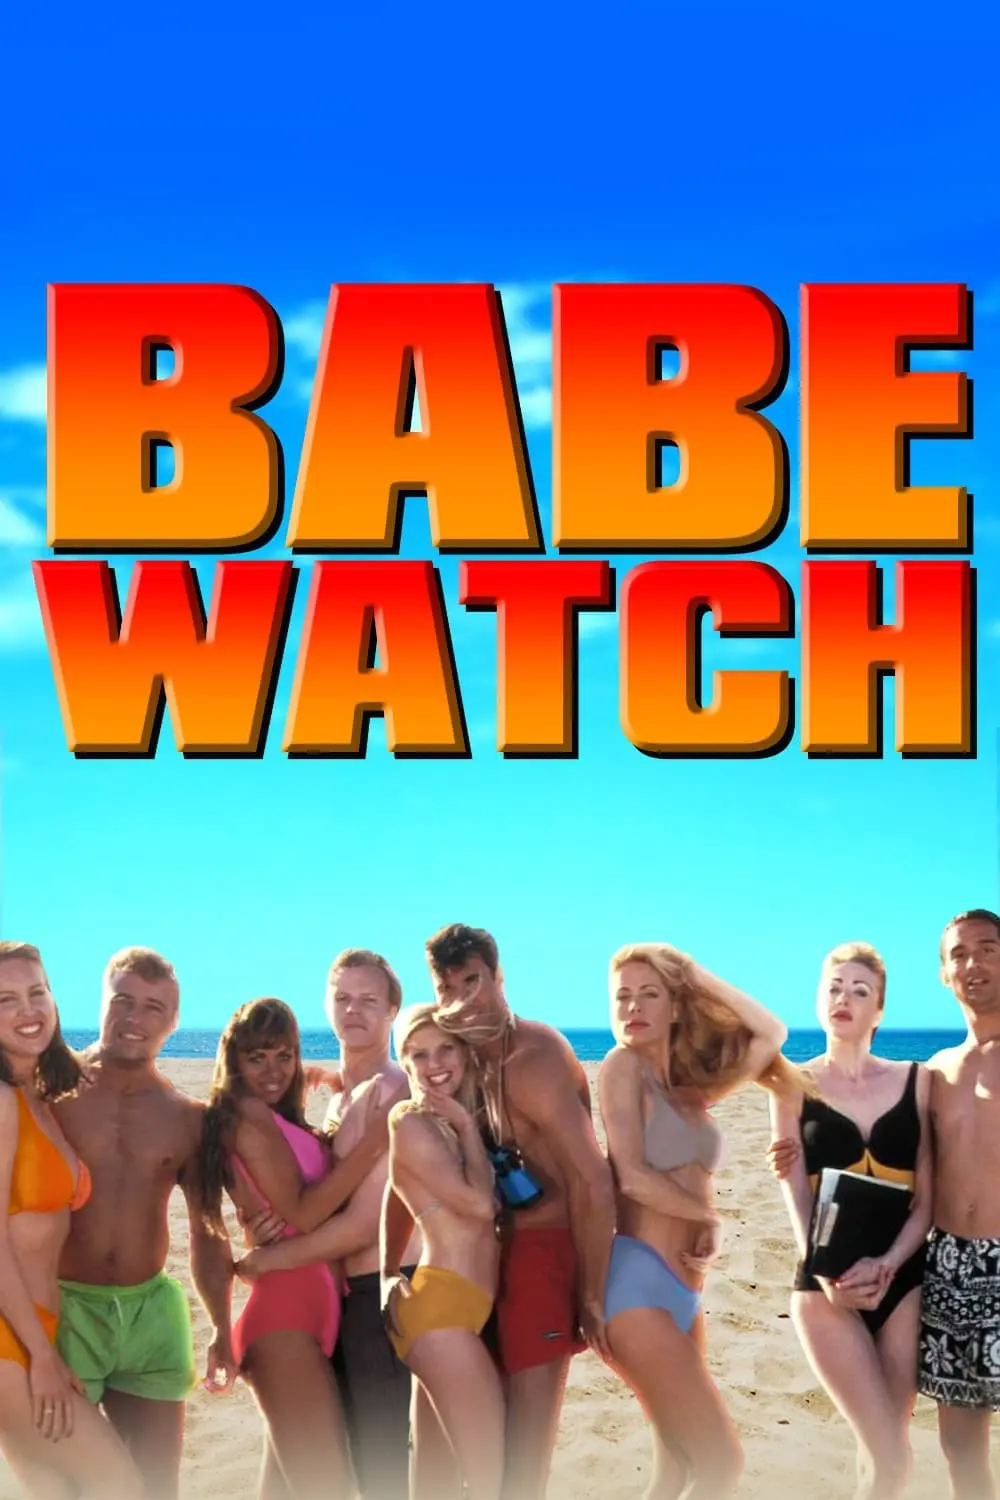 Babe Watch: Forbidden Parody_peliplat